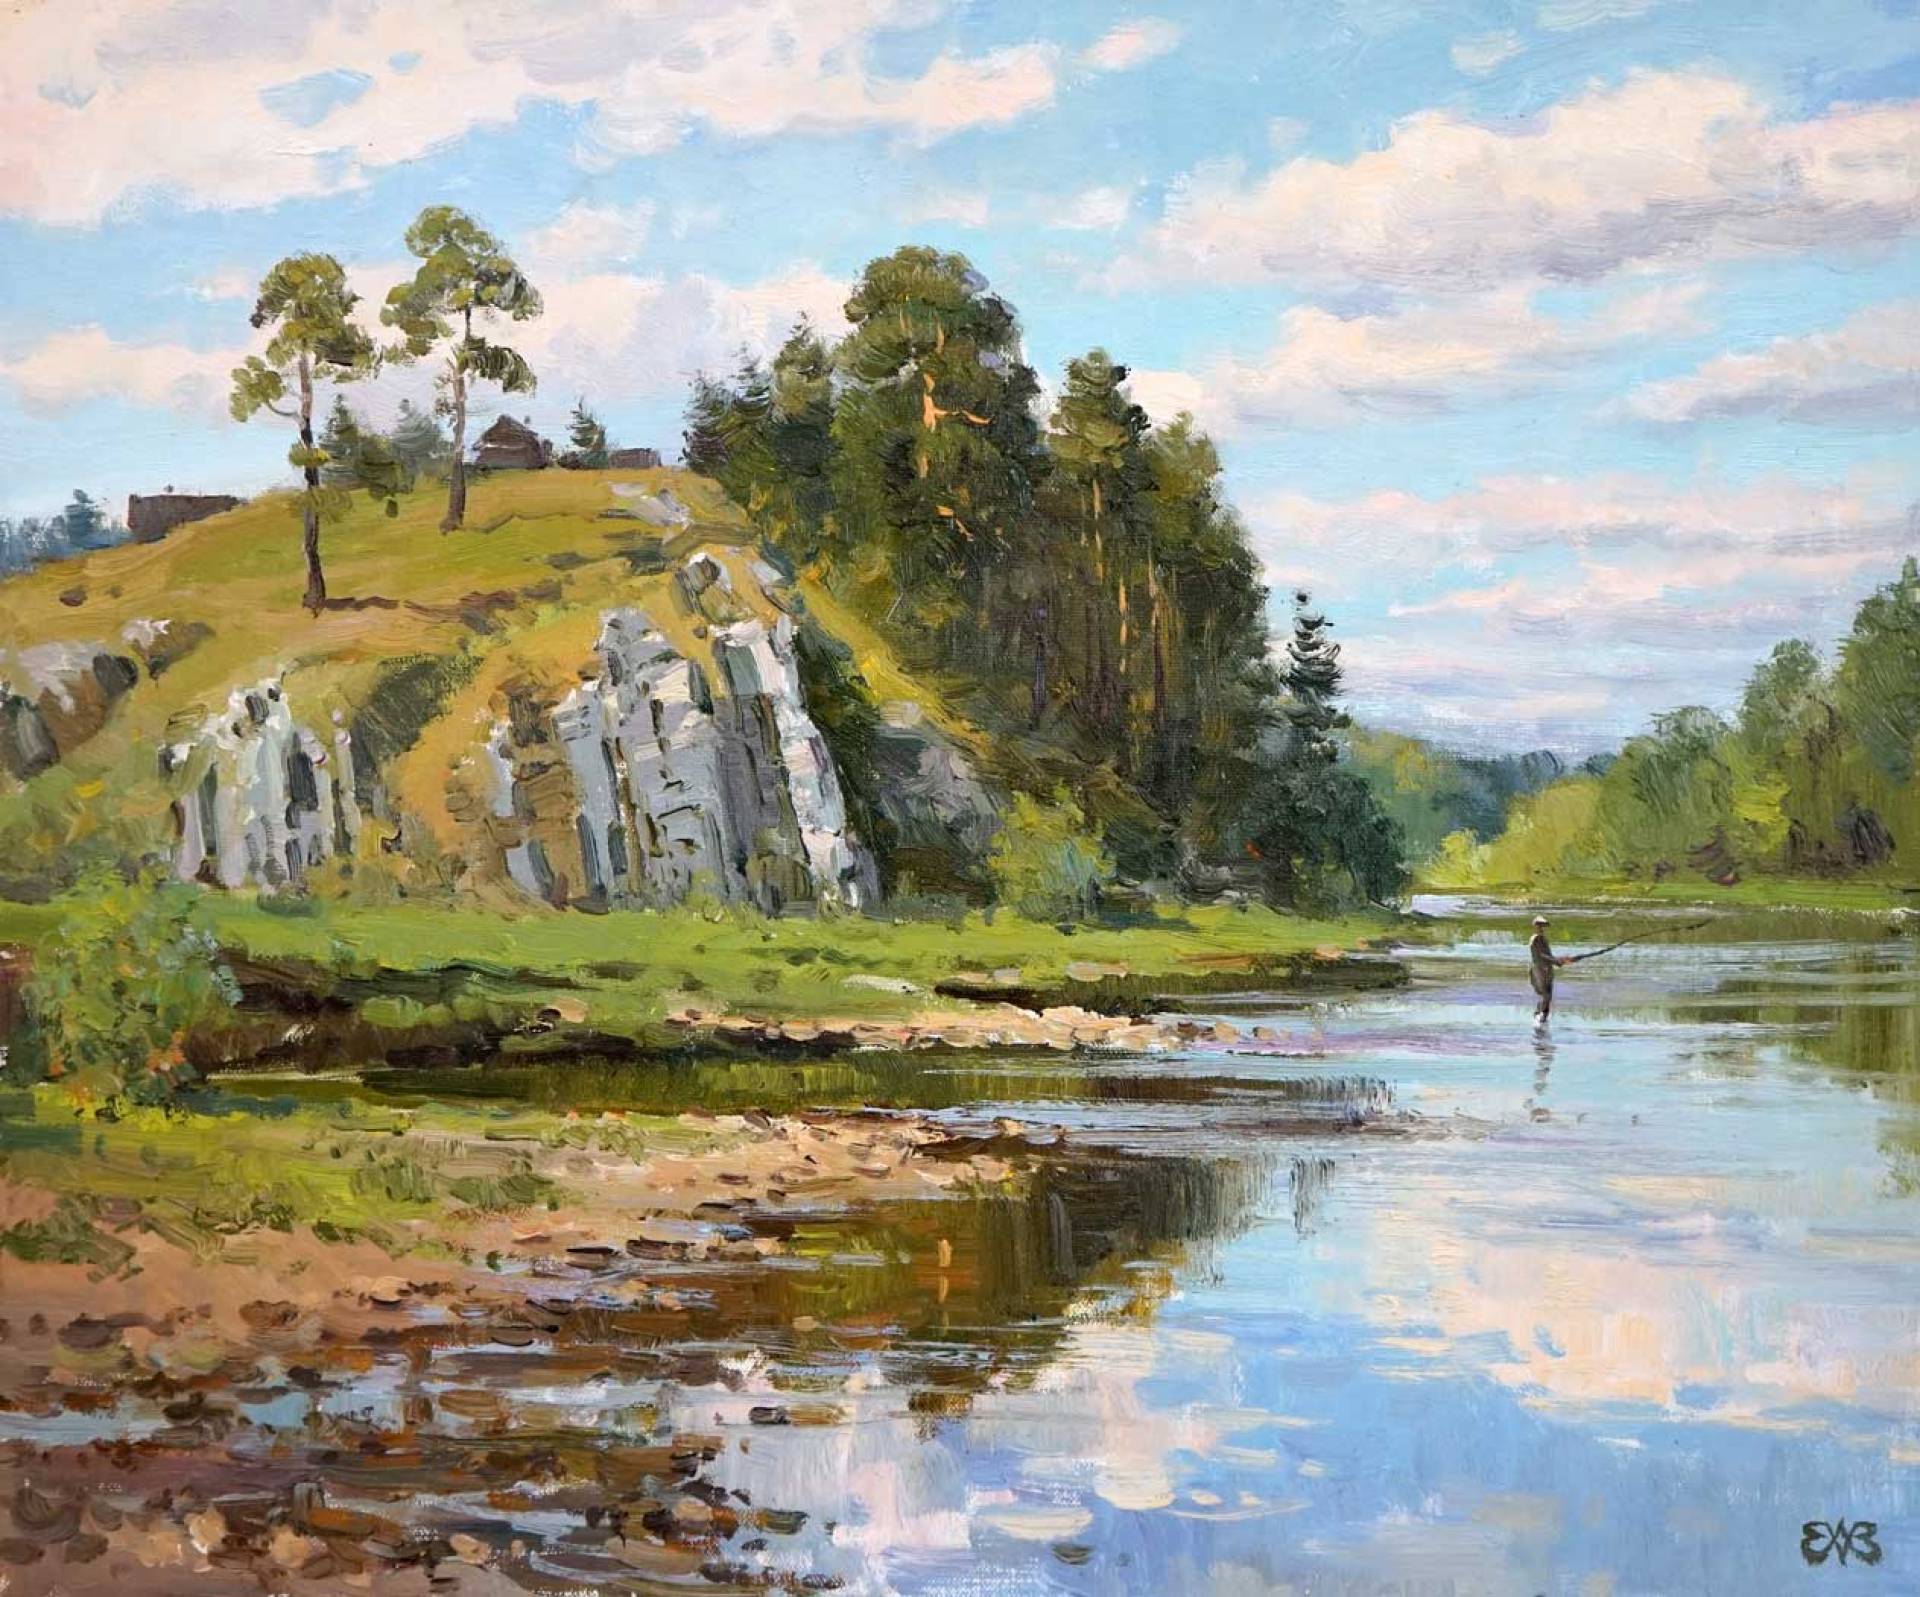 On Chusovaya. Kamenka - 1, Alexey Efremov, Buy the painting Oil